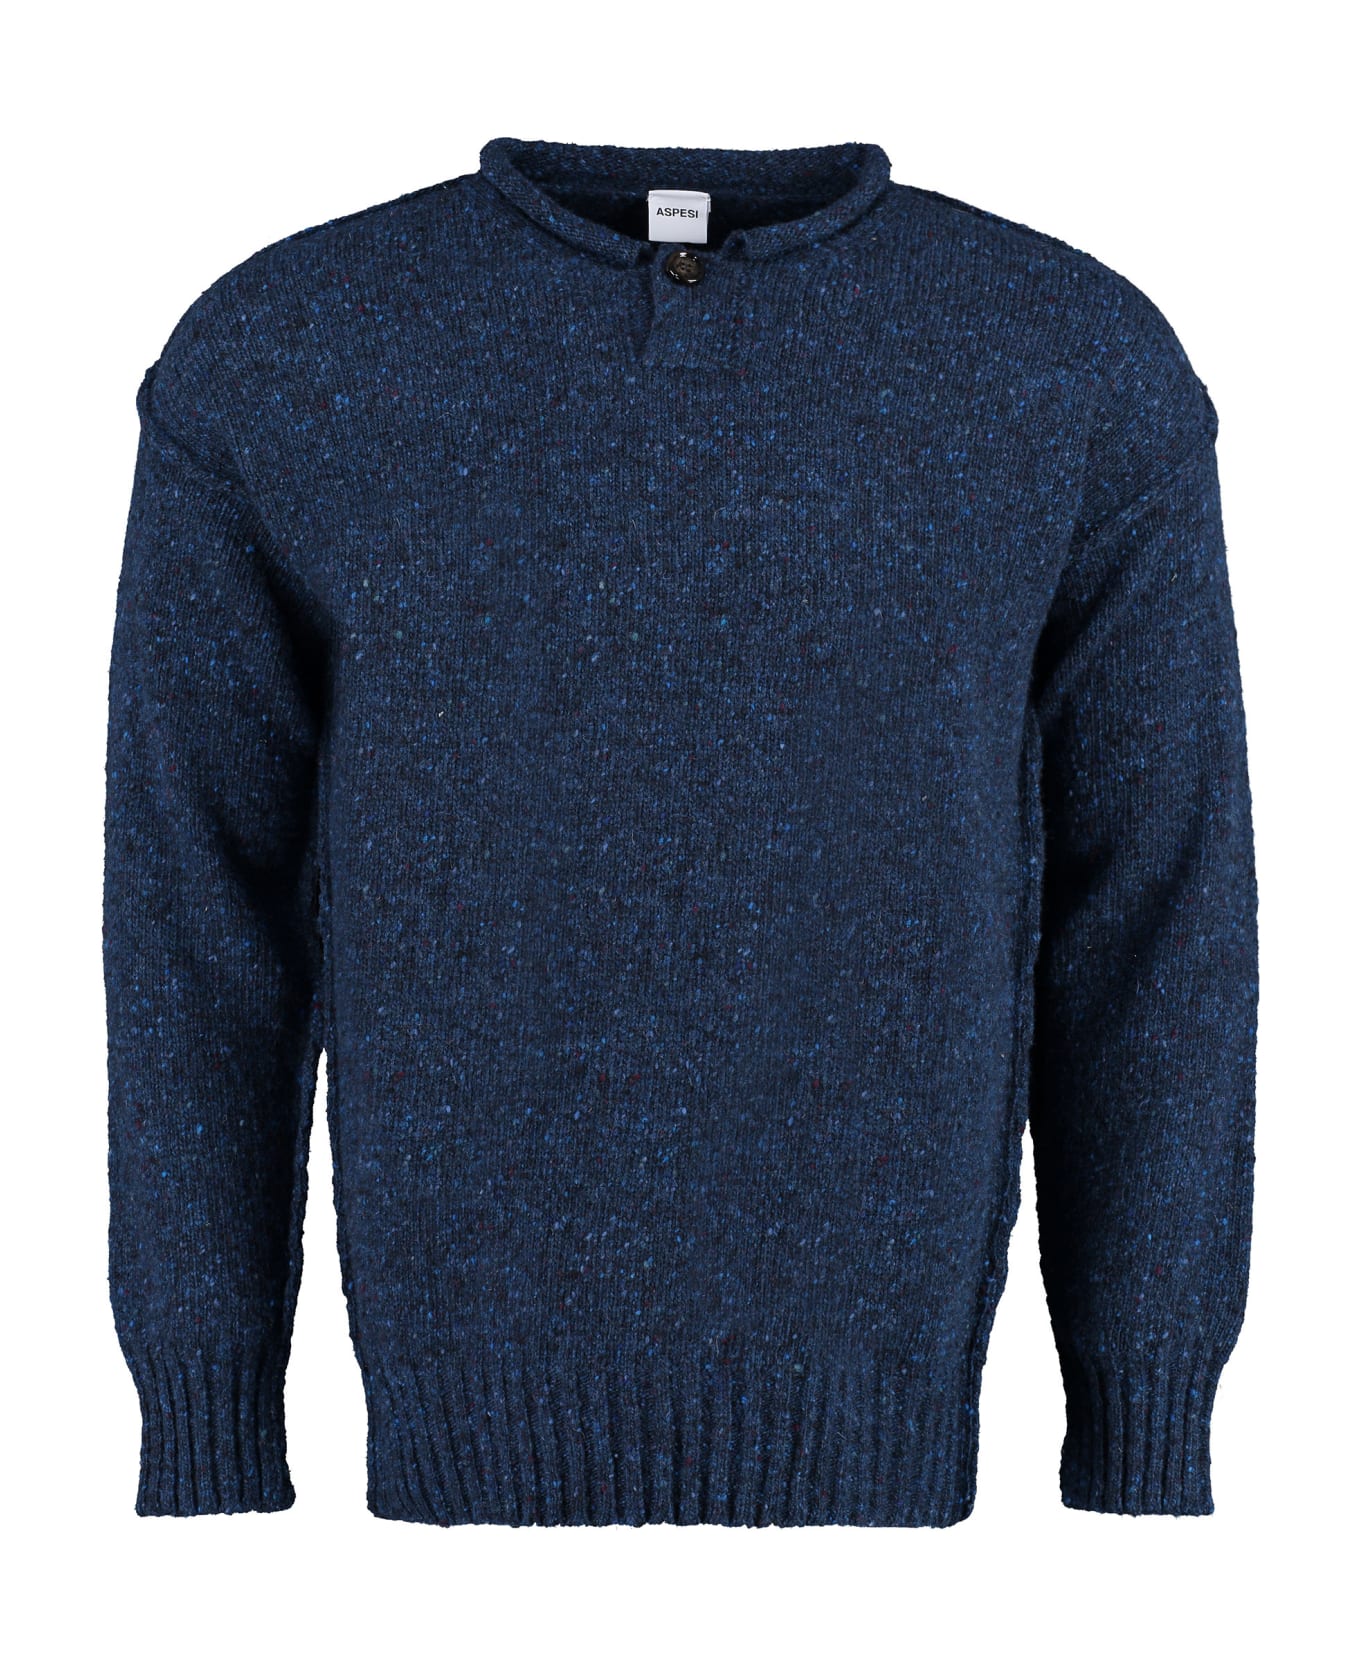 Aspesi Knit Wool Pullover - blue